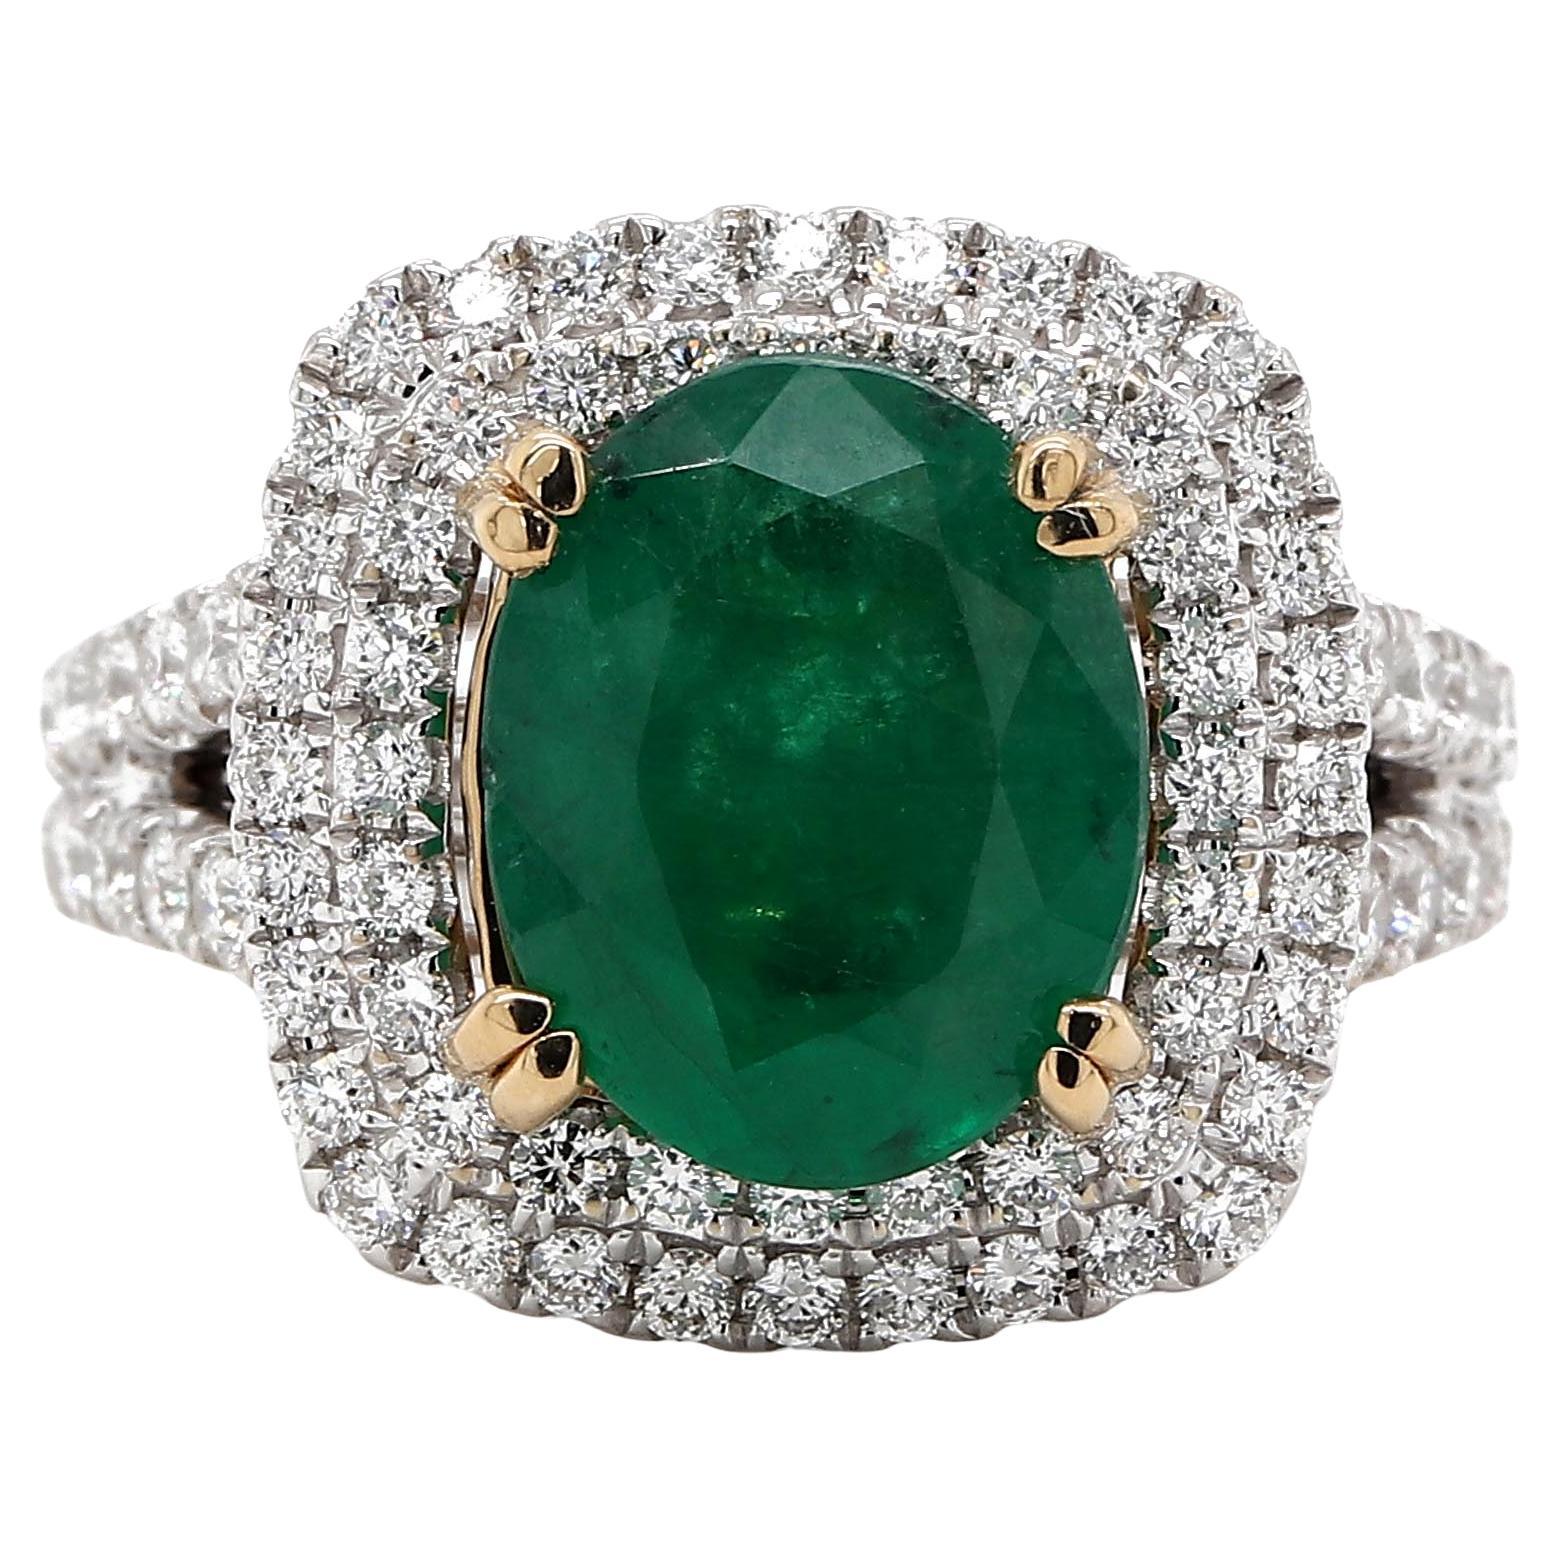 Fine 1.06 Carat Emerald Ring in 18k 2 Tone Gold